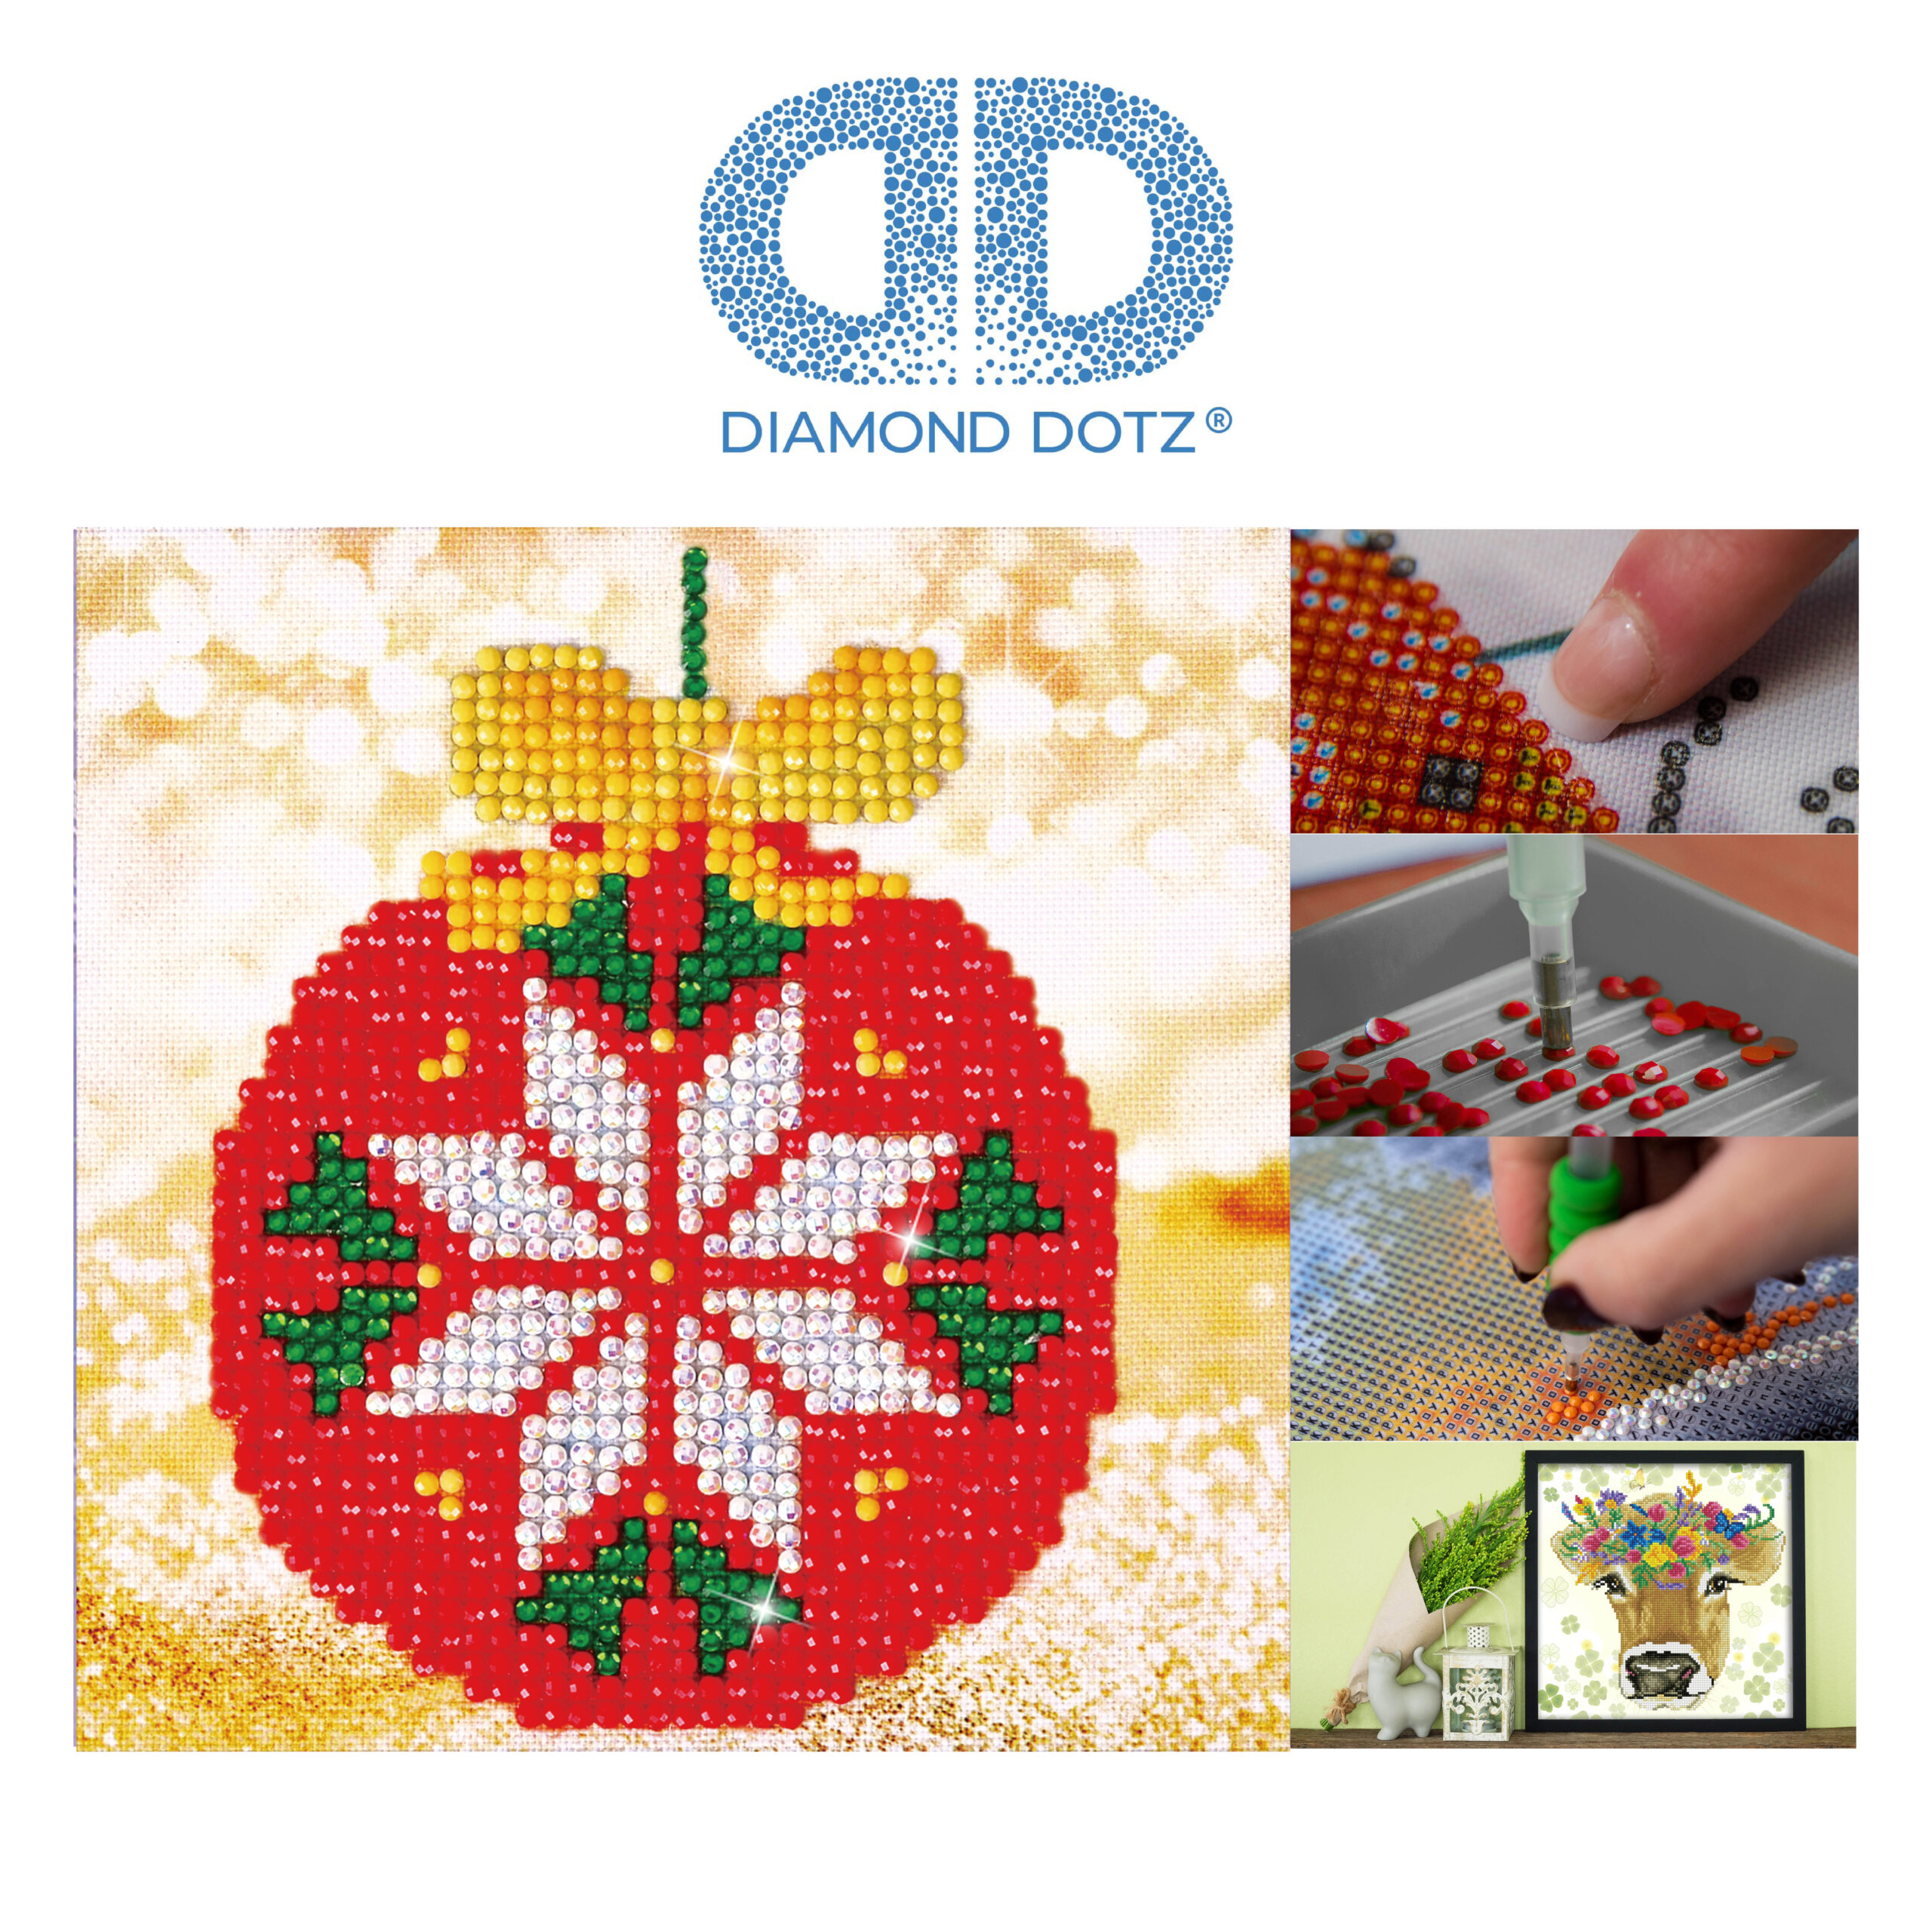 Diamond Dotz Motiv “Christbaumkugel”, funkelndes Diamantbild zum  Selbstgestalten ca. 13,5 x 13,5 cm groß, Malen mit Diamanten – Farbenspiel